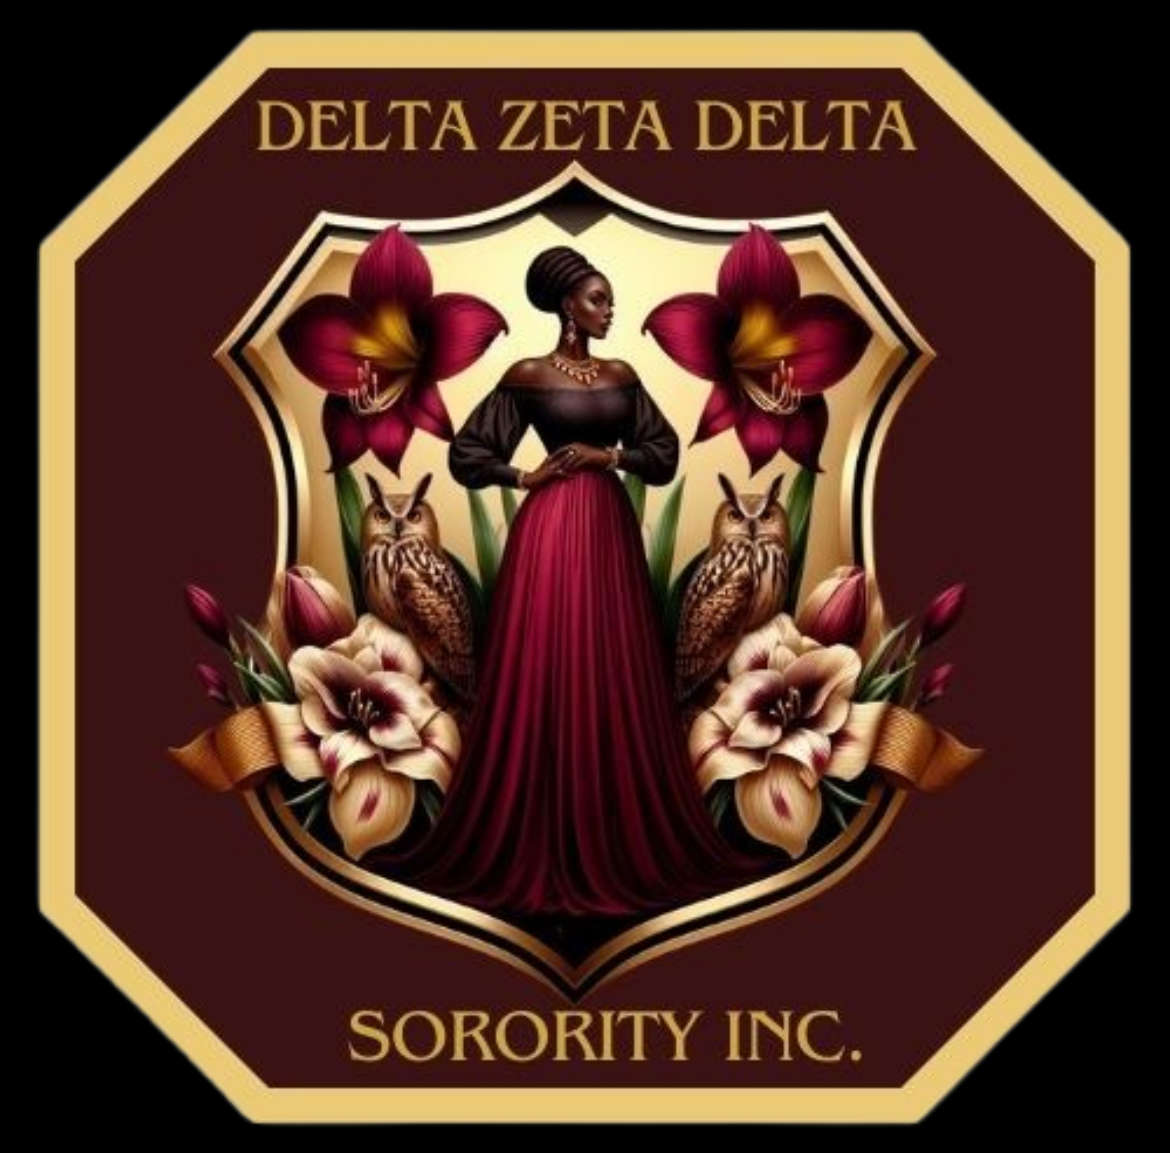 Delta Zeta Delta Sorority, Inc. Logo